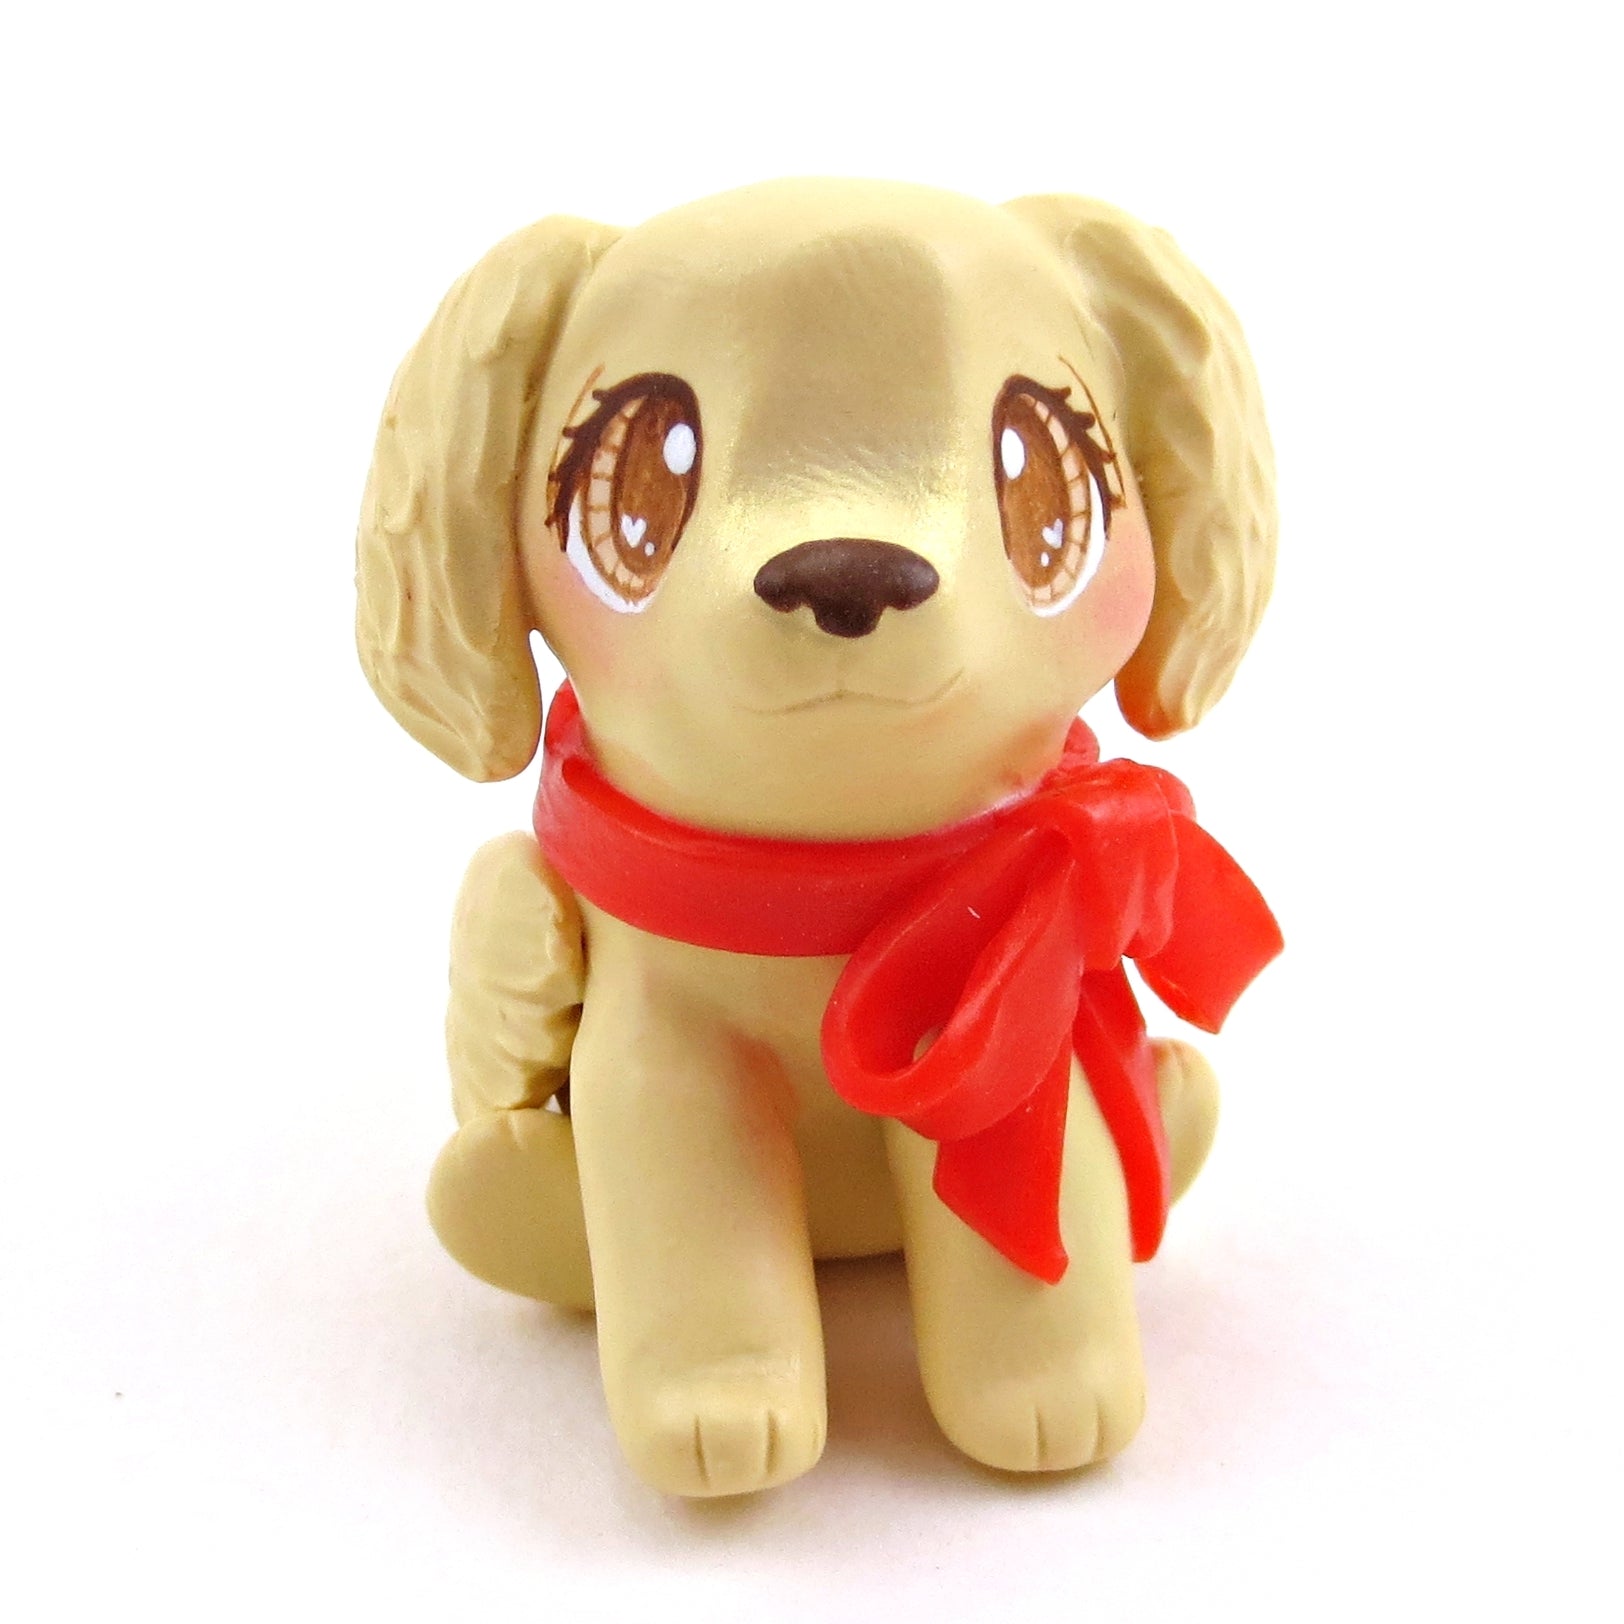 Golden Retriever Puppy Dog Figurine - Polymer Clay Animals Valentine Collection